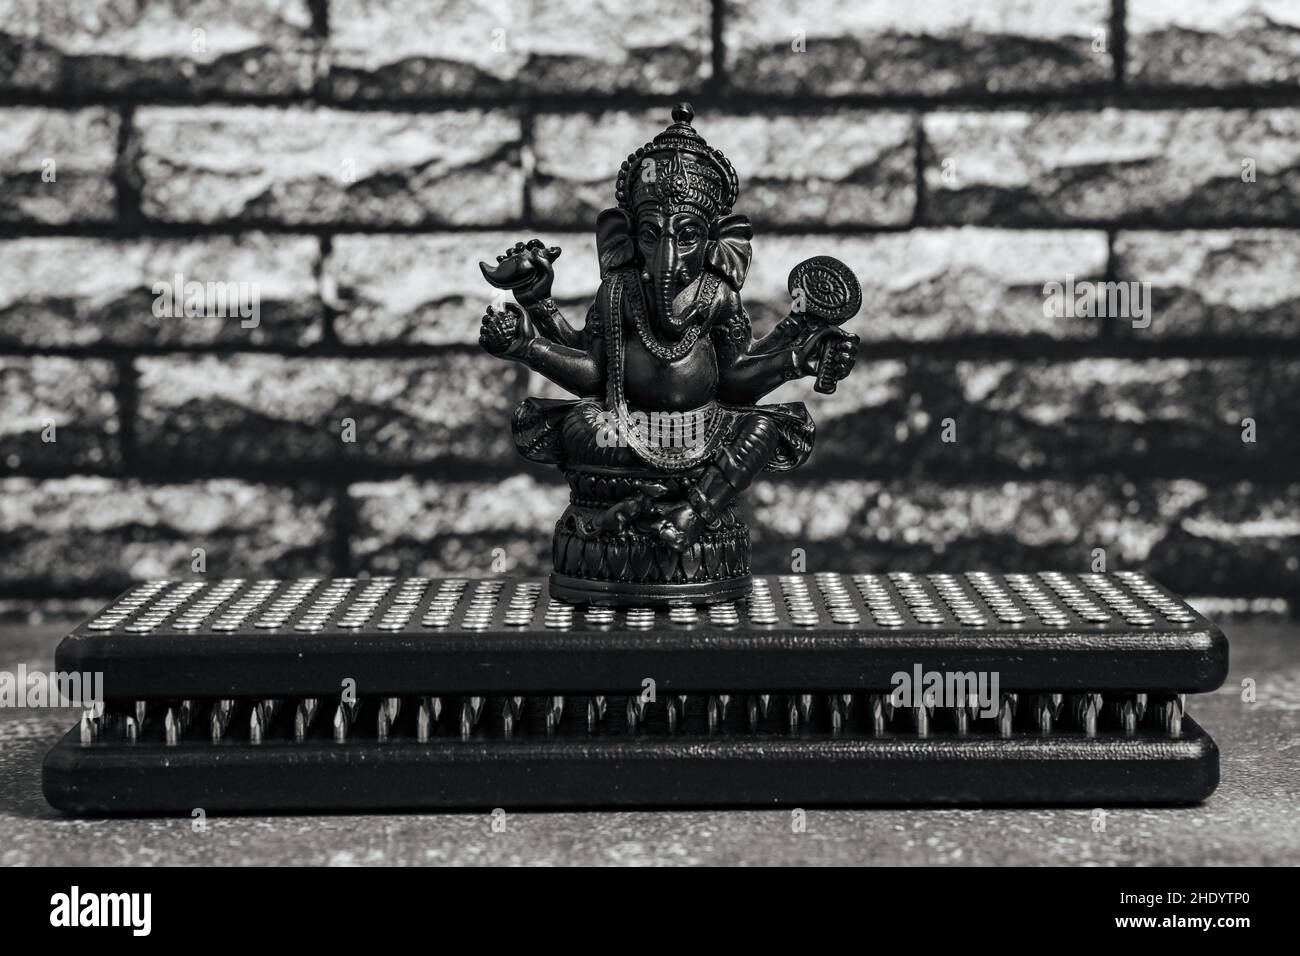 Steinstatue von Lord Ganesha, hindu-Gott.Nahaufnahme schwarze Sadhu Holzbretter mit Nägeln für Yoga, spirituelle Praktiken auf dem grauen Hintergrund und dunkle br Stockfoto